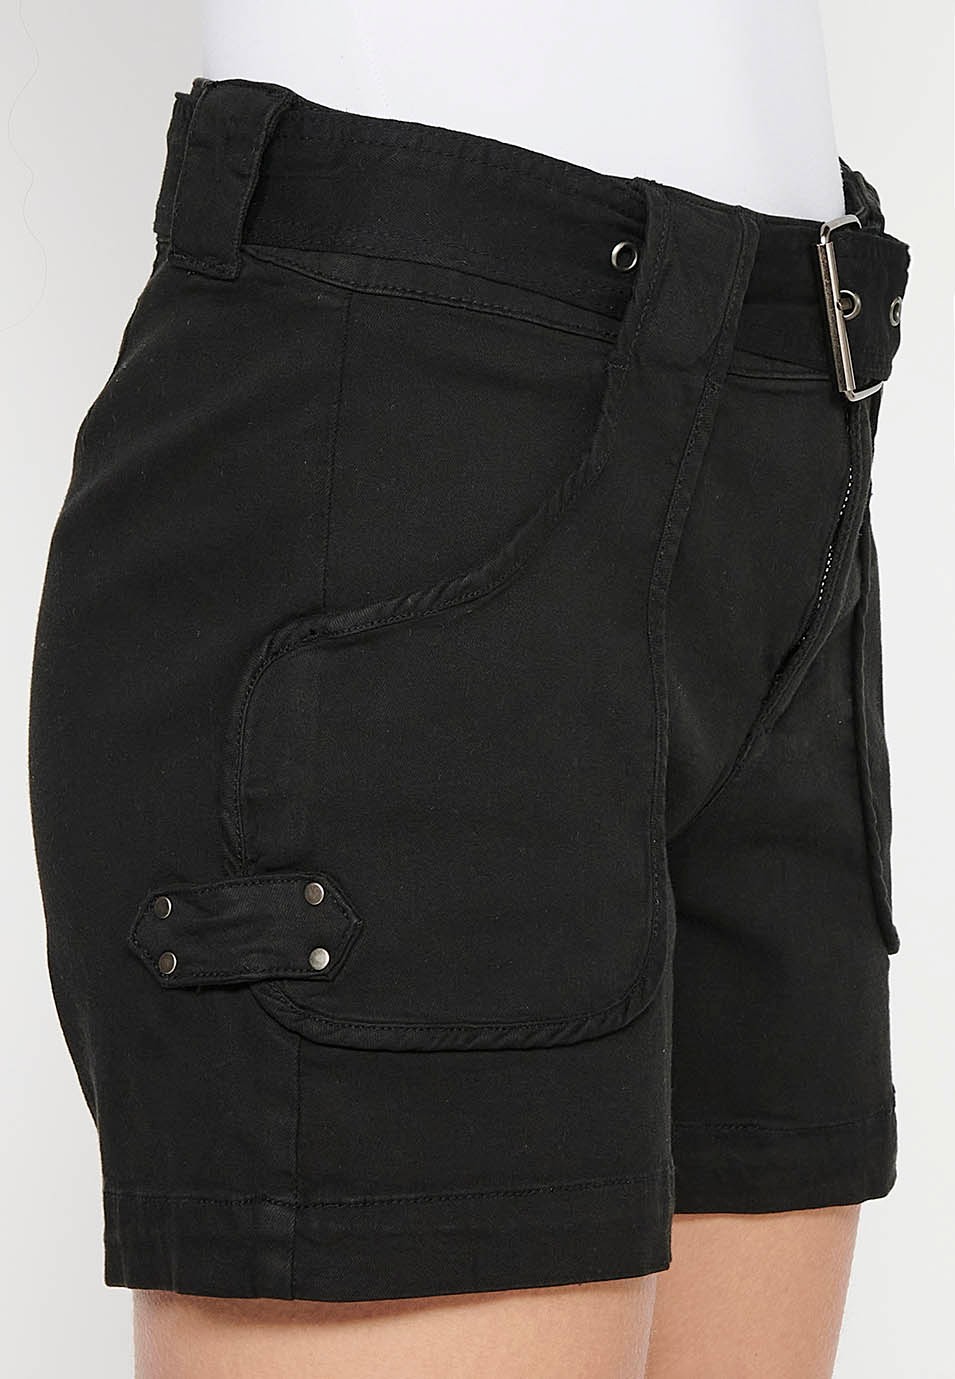 Schwarze Shorts mit Gürtel an der Taille und aufgesetzten Taschen für Damen 7